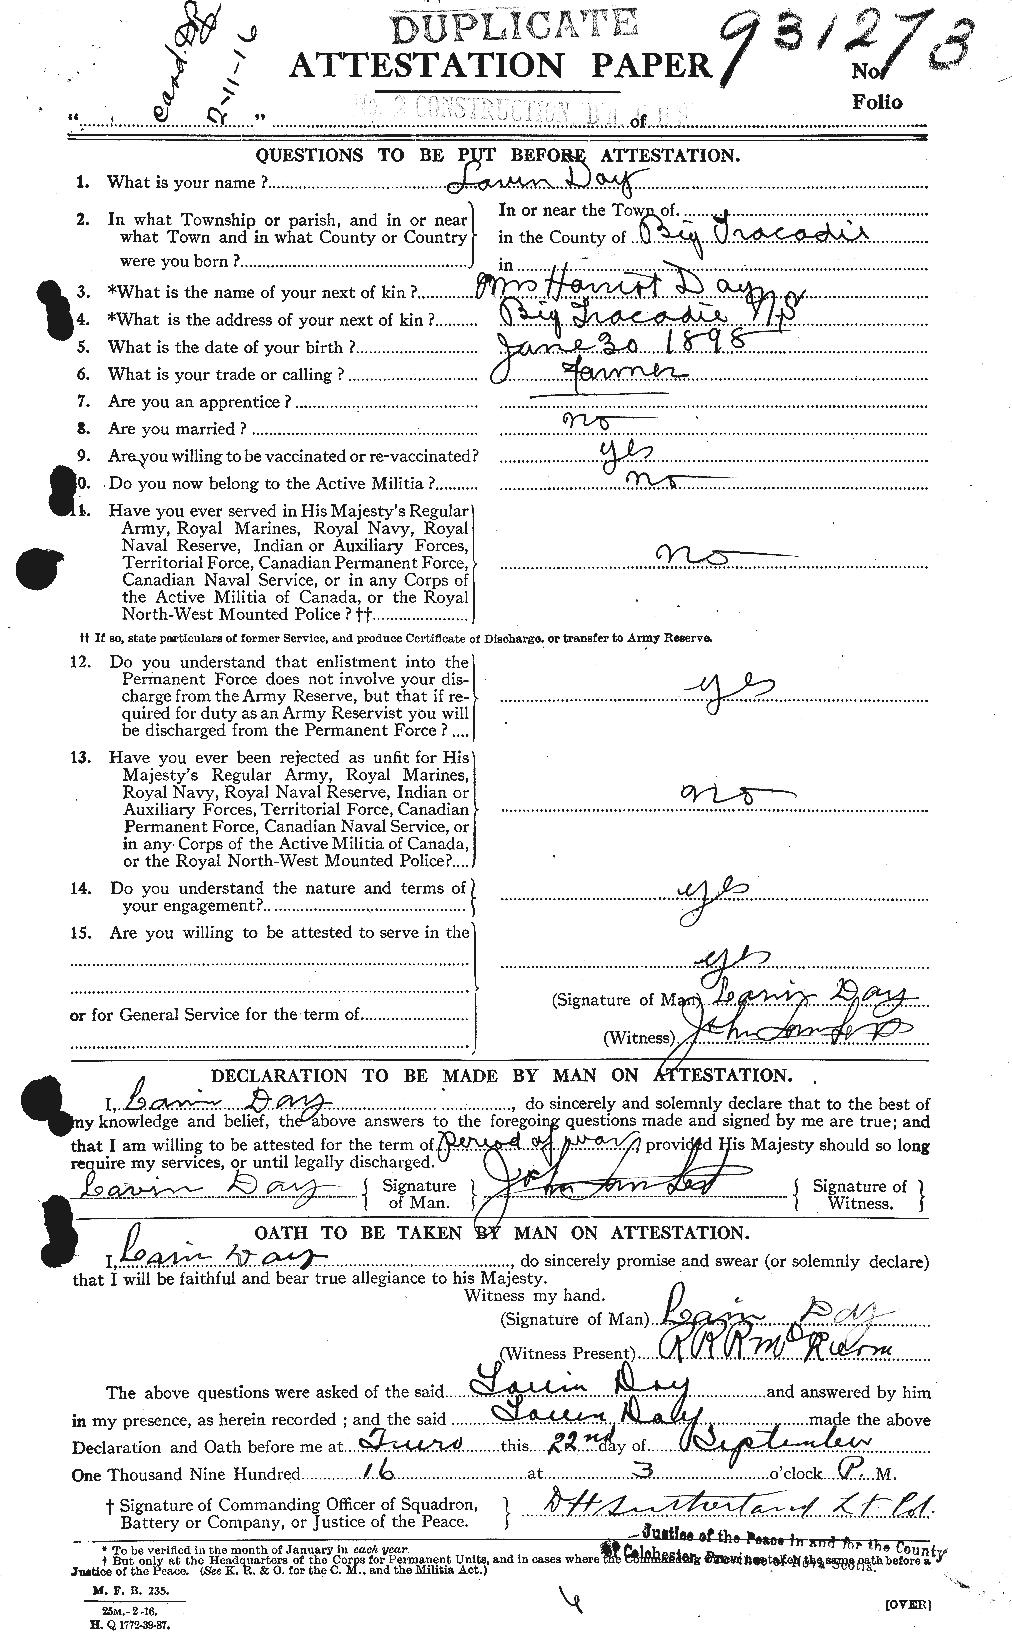 Dossiers du Personnel de la Première Guerre mondiale - CEC 283431a